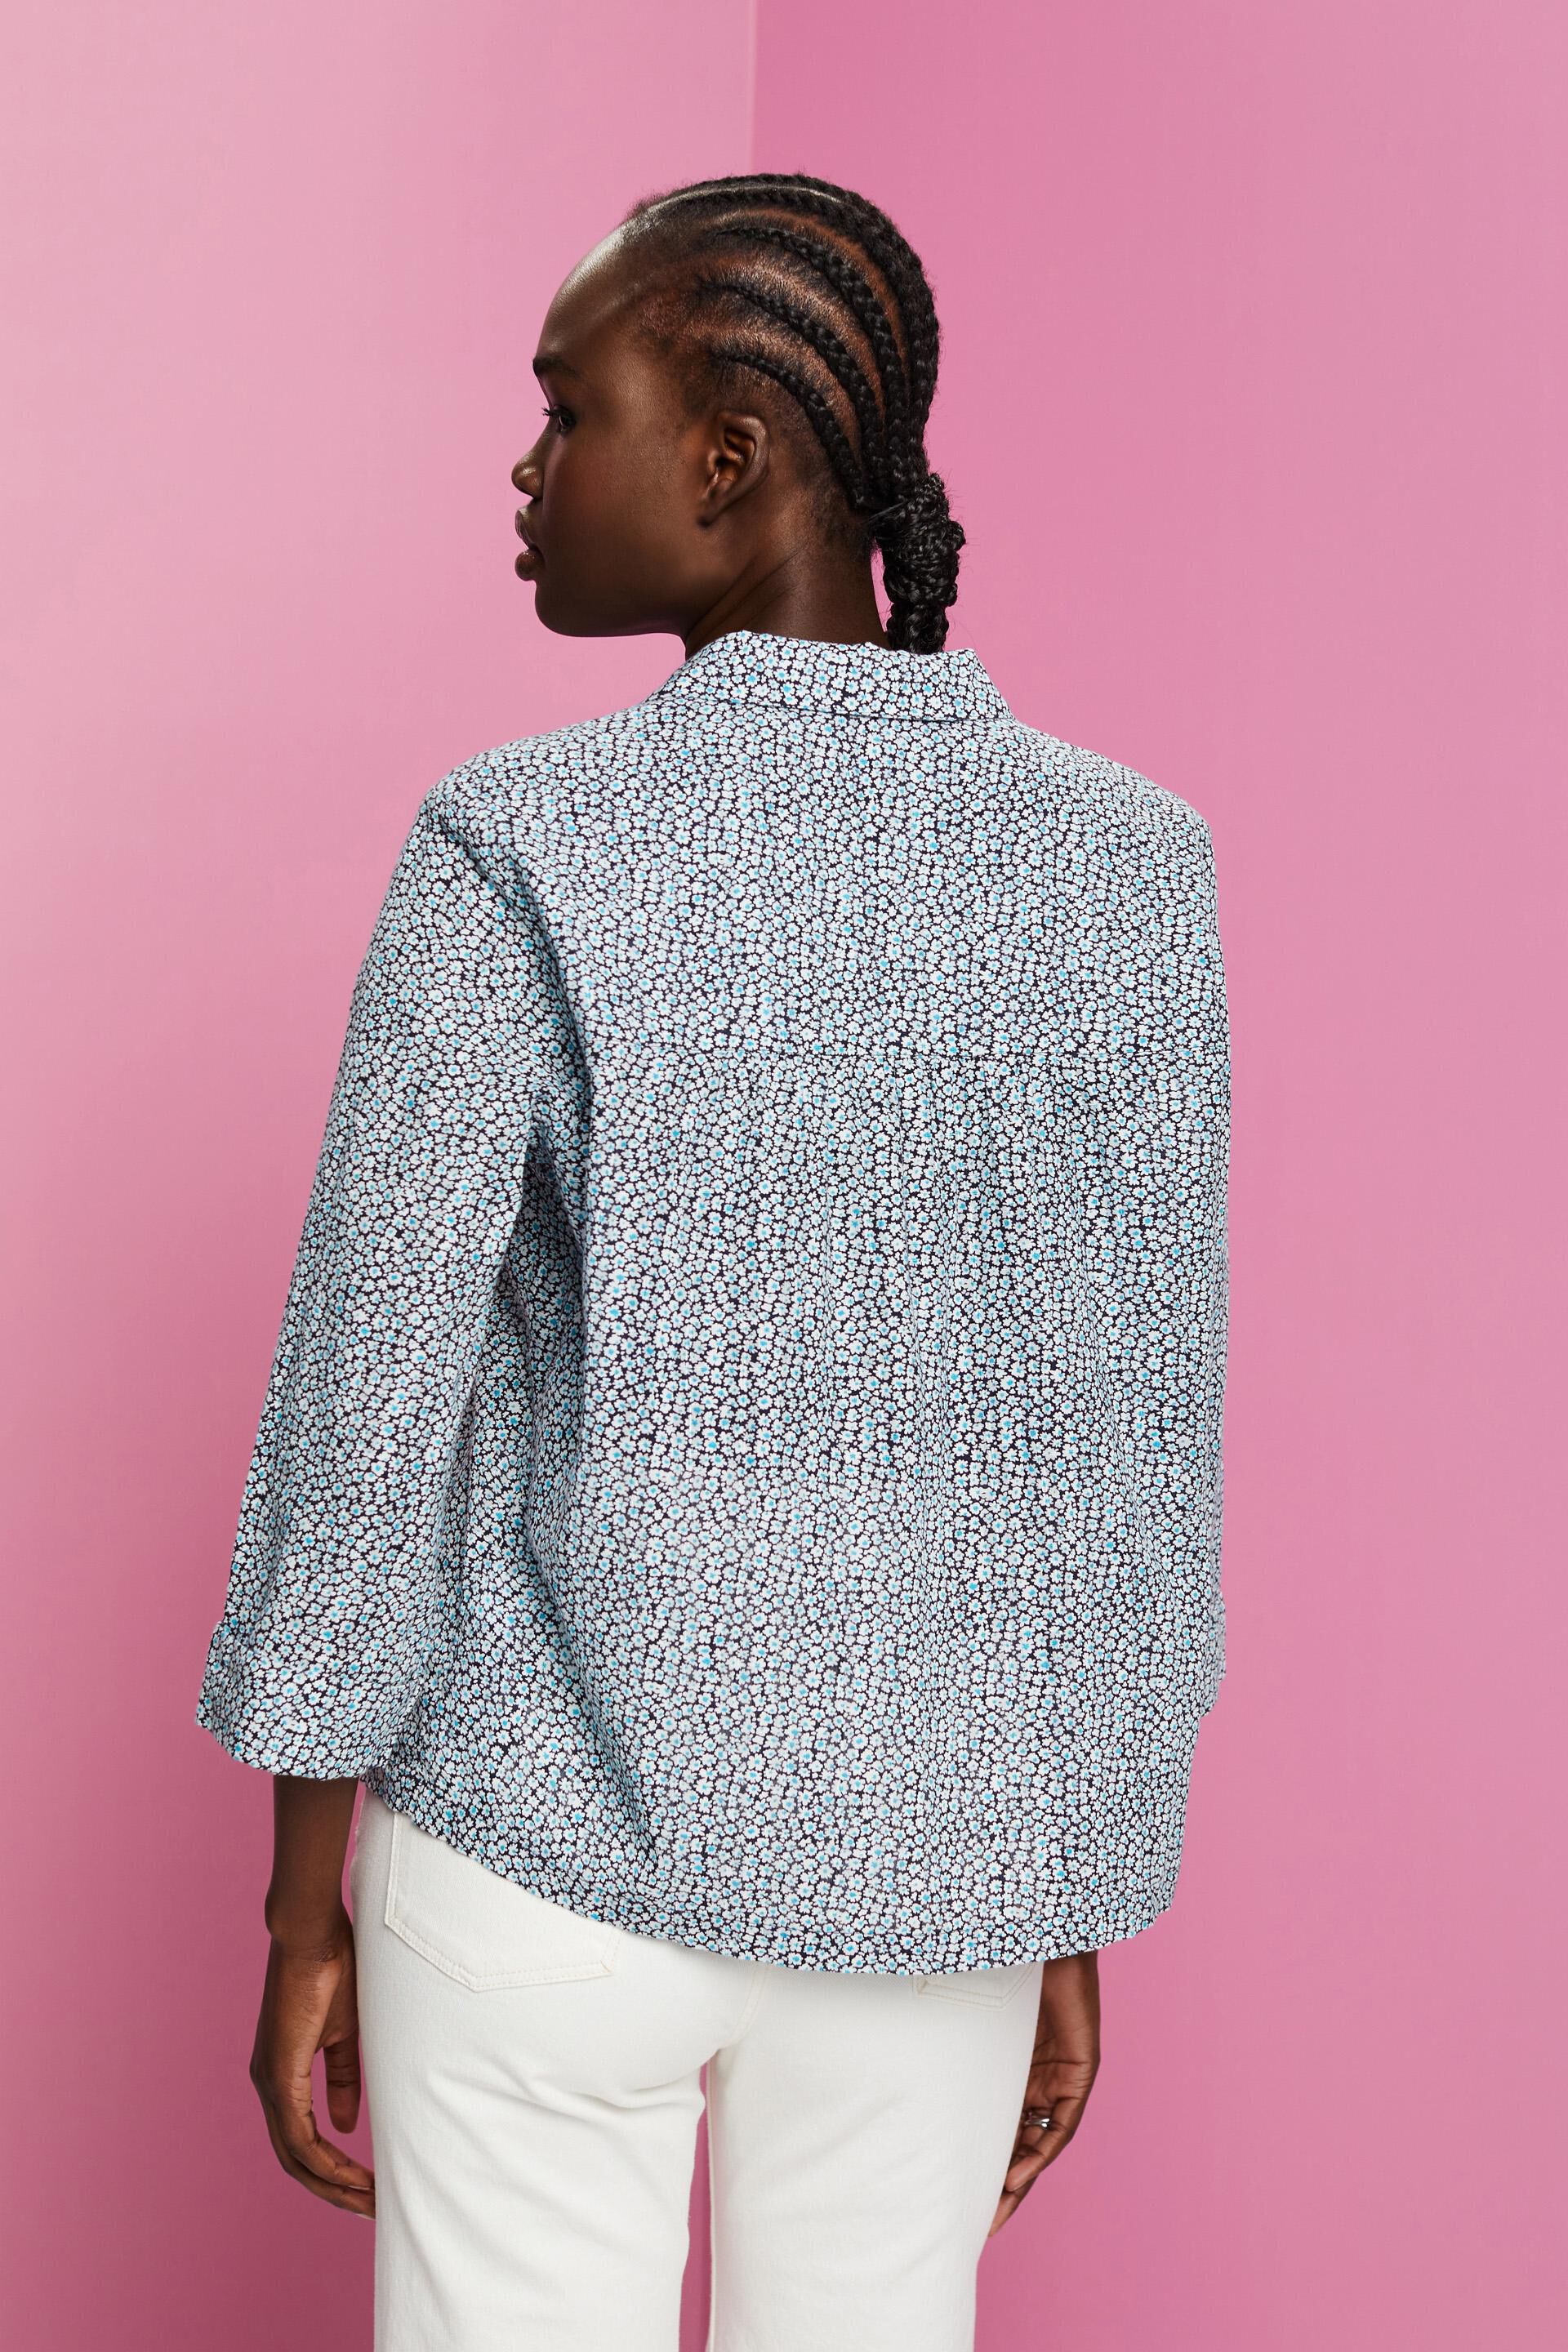 Cotton blouse with floral print at our online shop - ESPRIT